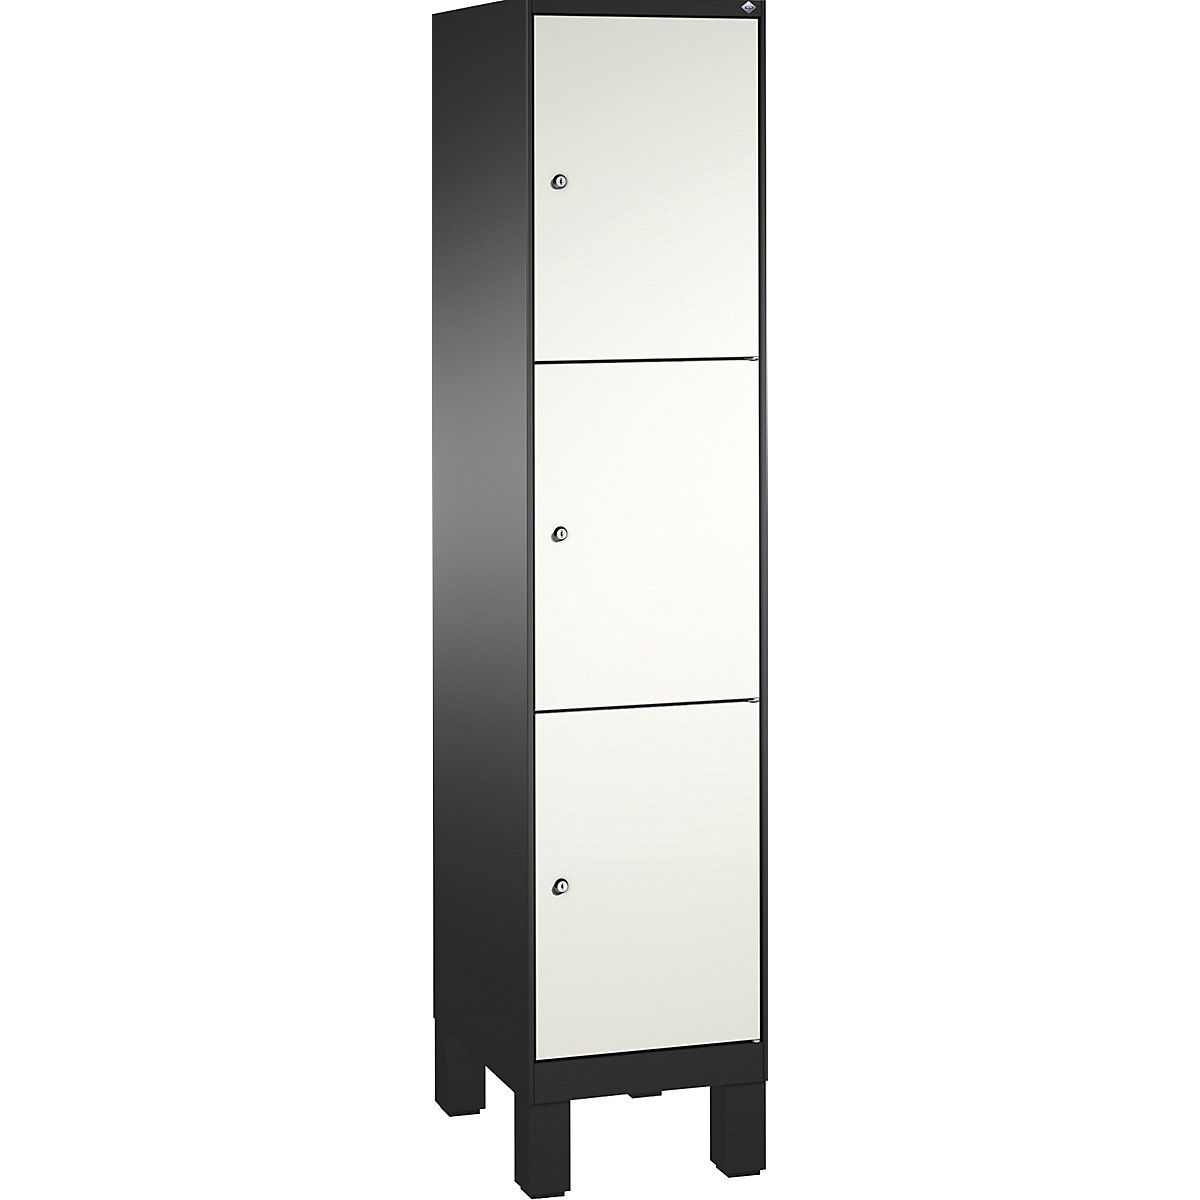 EVOLO locker unit, with feet – C+P, 1 compartment, 3 shelf compartments, compartment width 400 mm, black grey / traffic white